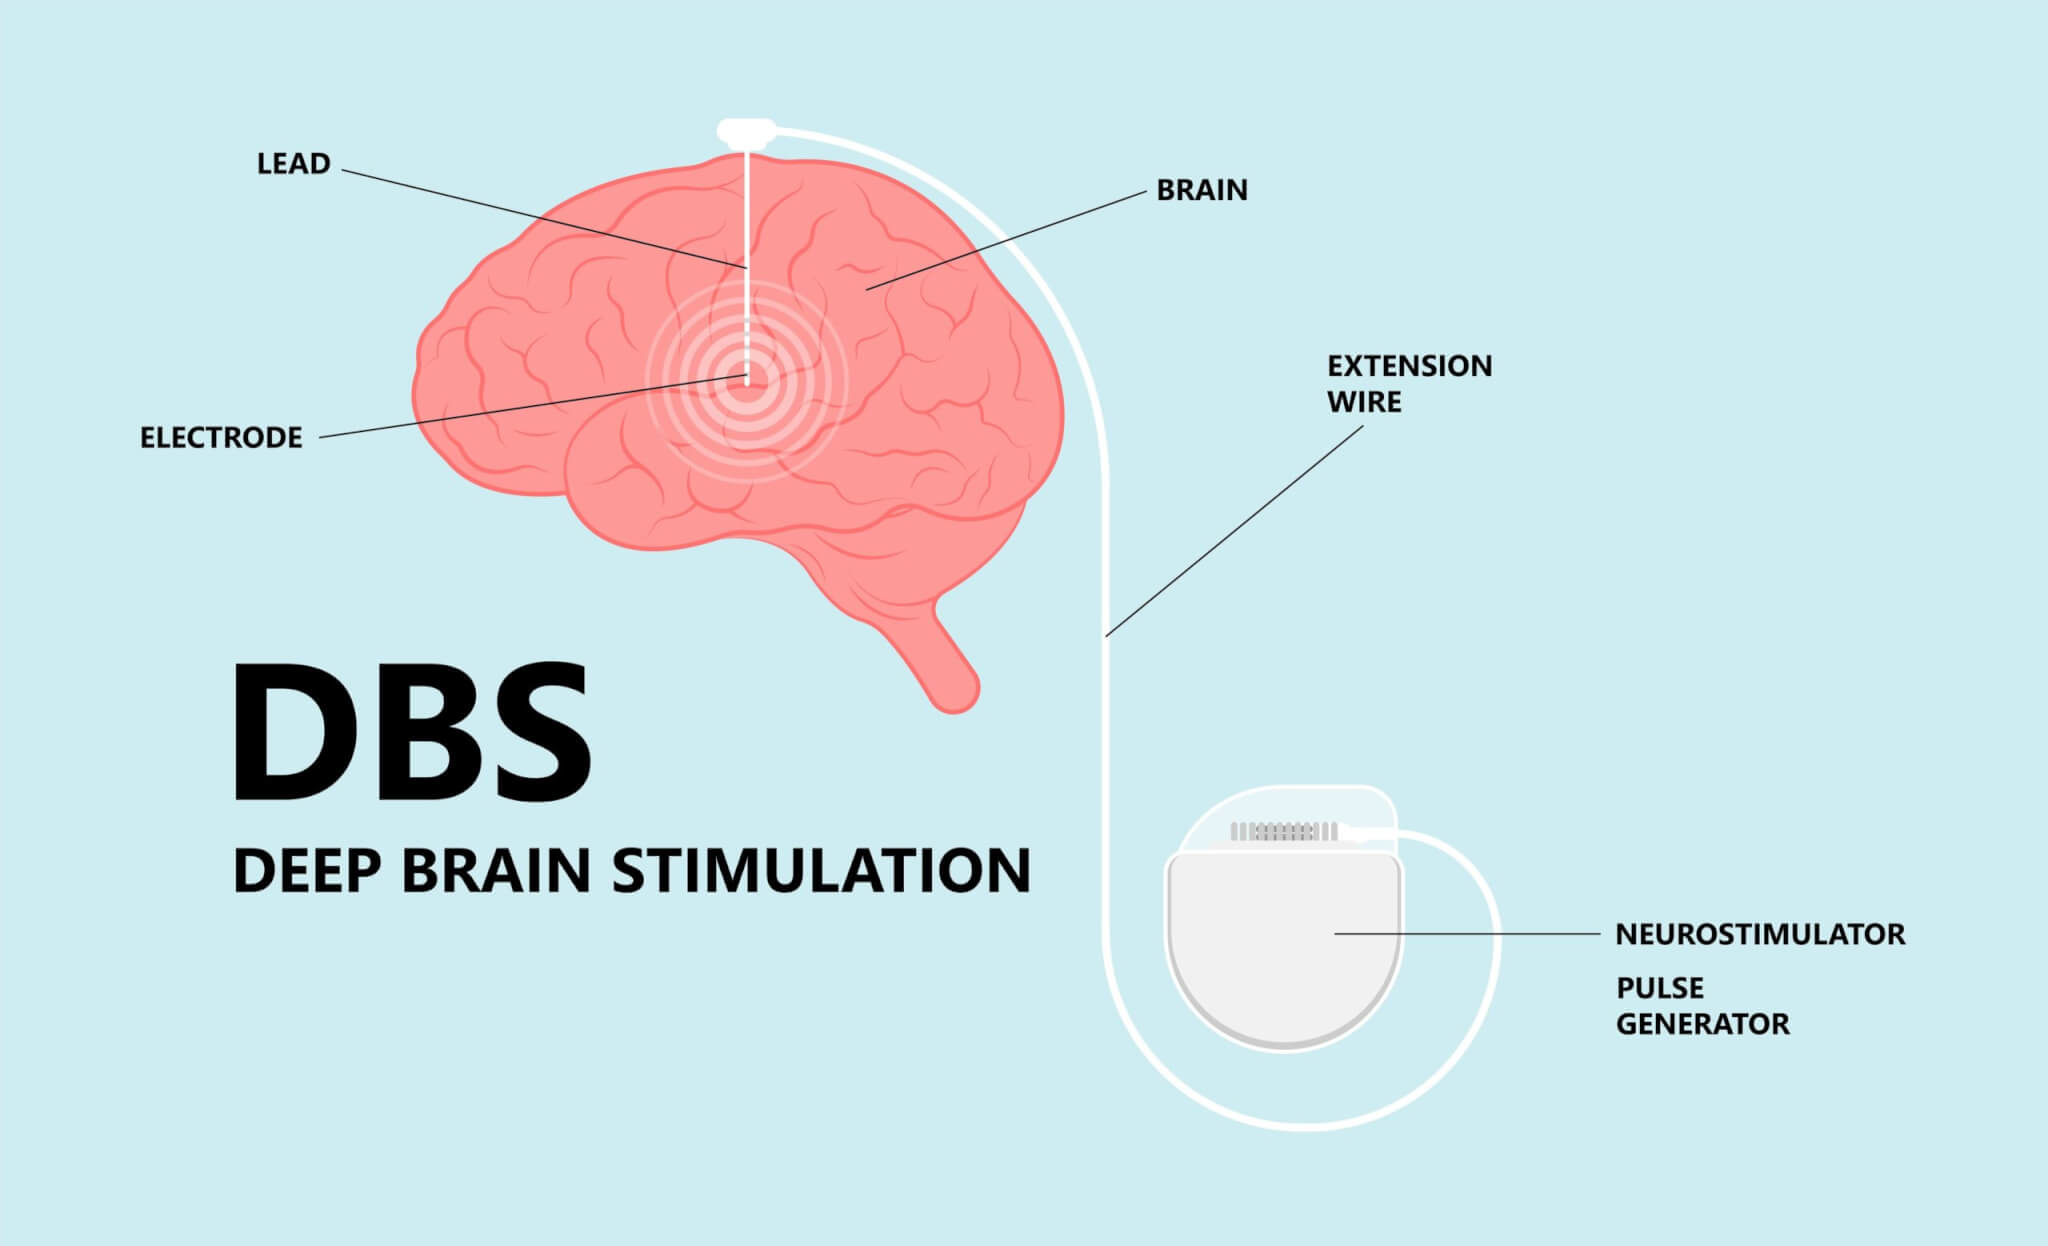 Deep brain stimulation or DBS